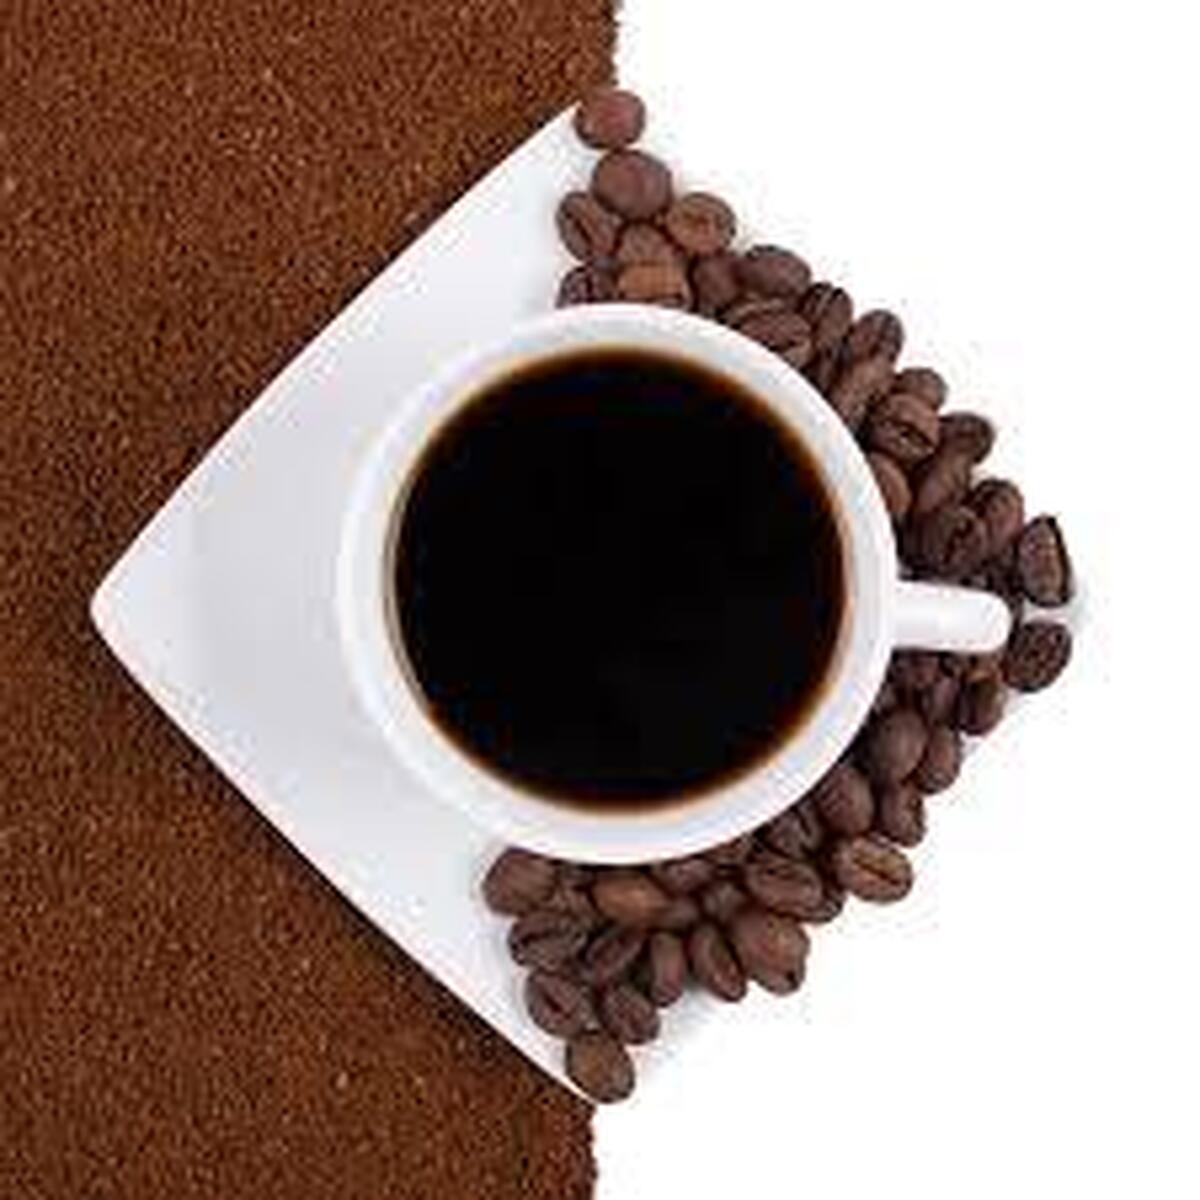 ۵ اشتباه رایج در نحوه درست کردن انواع قهوه